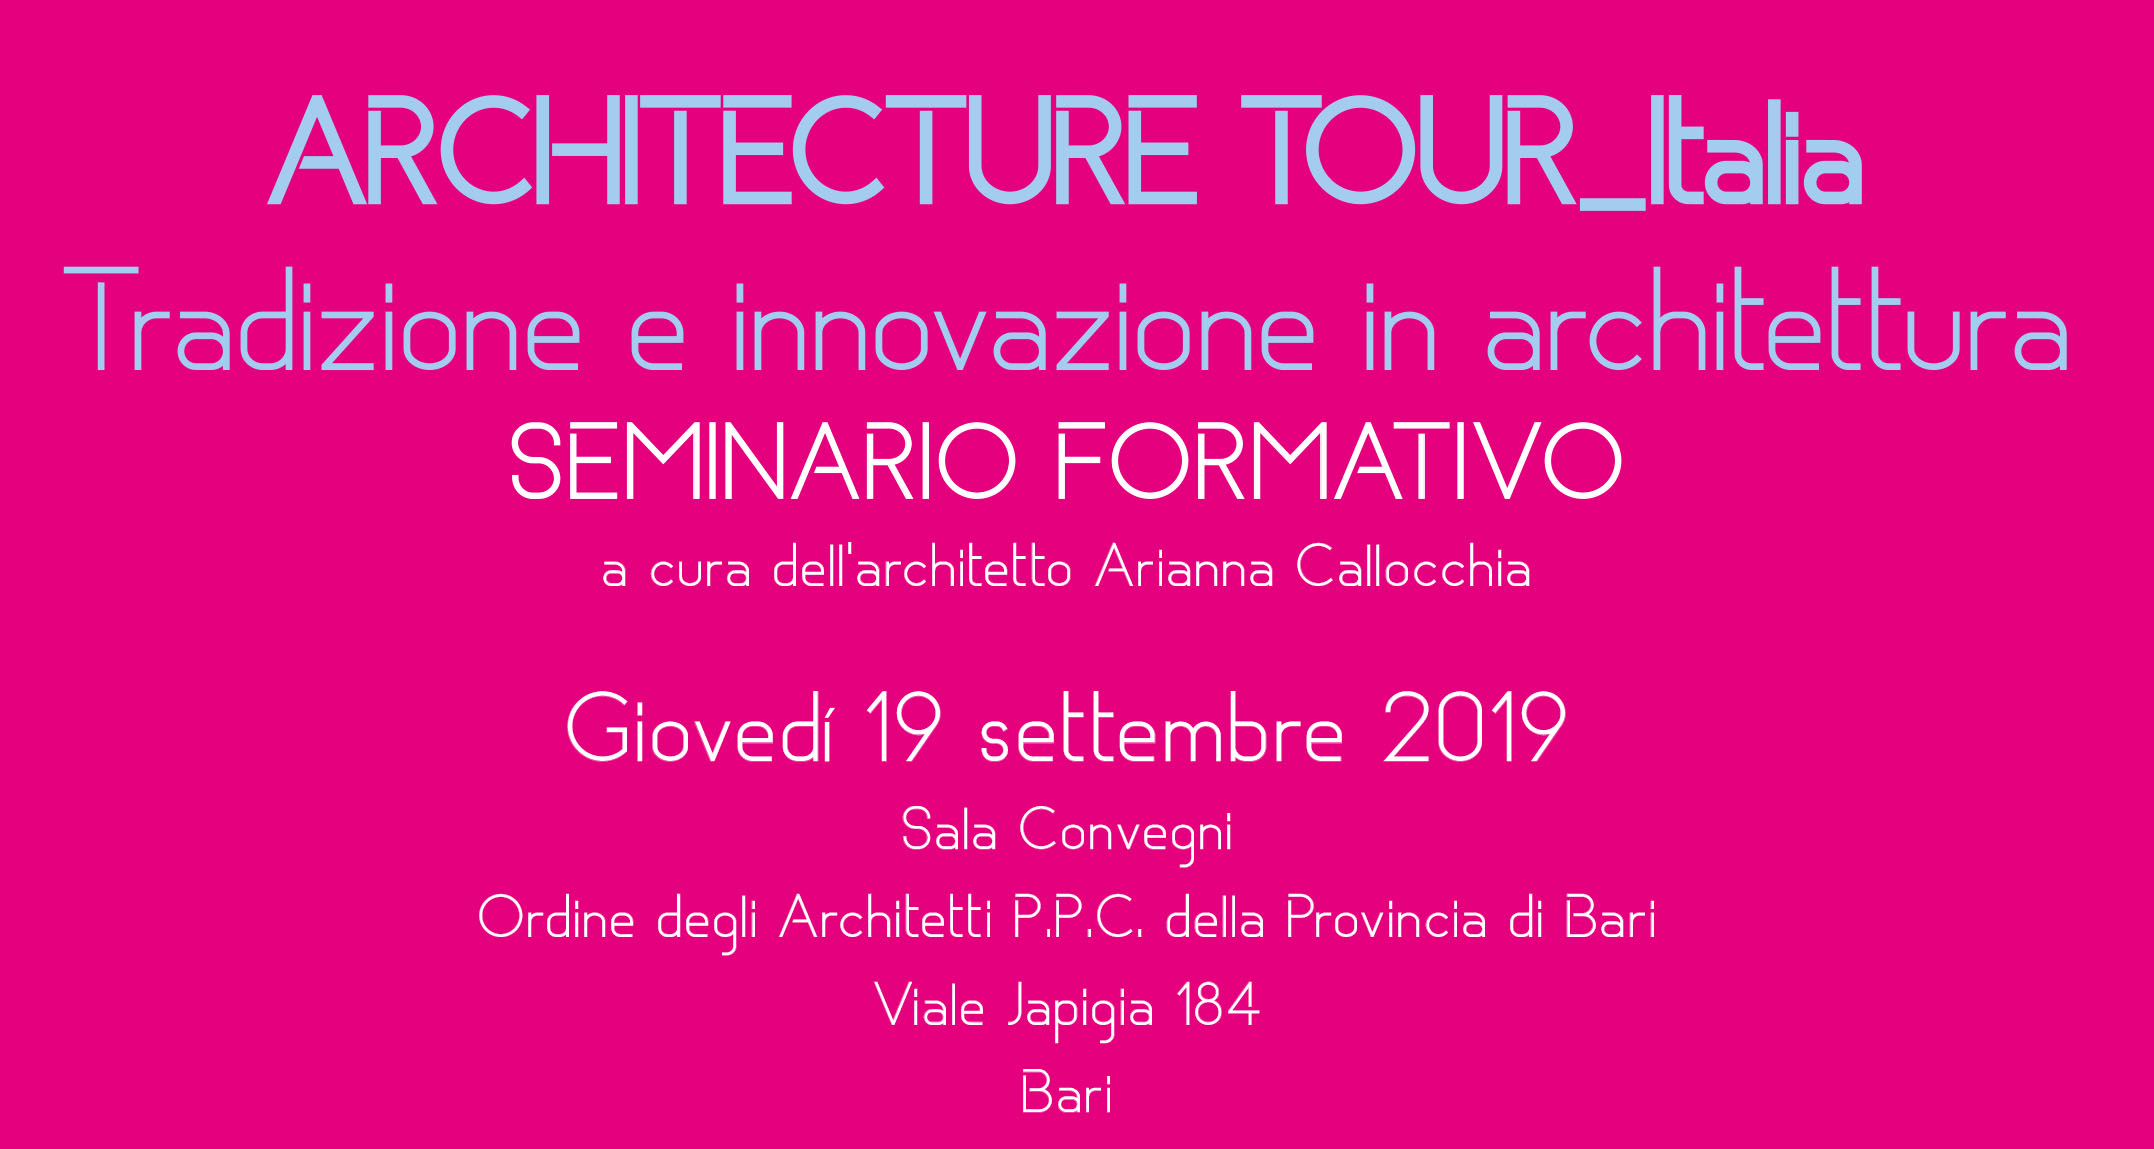 Architecture Tour - Tradizione e innovazione in architettura